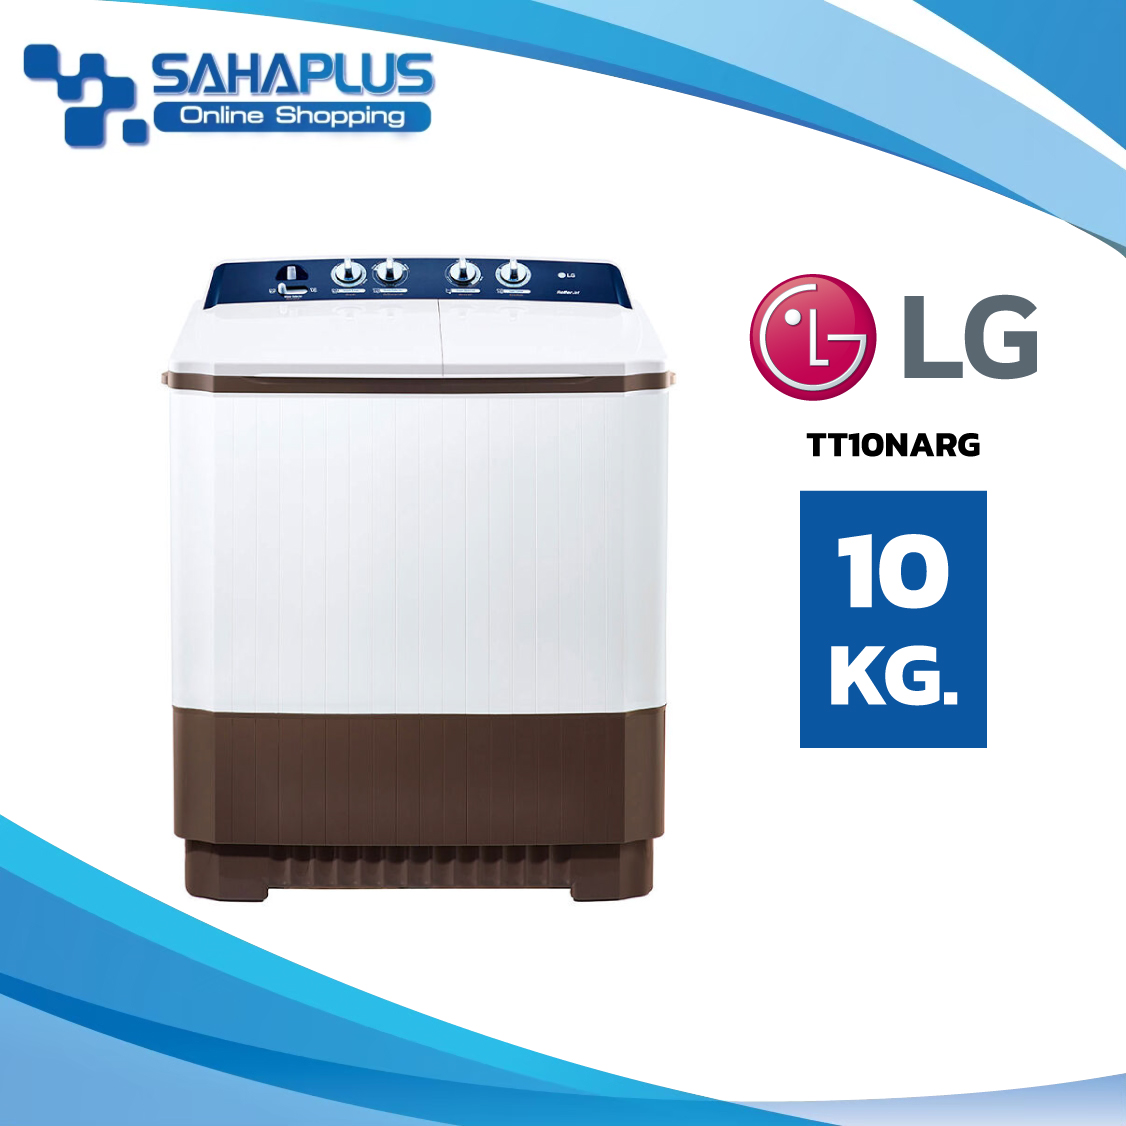 เครื่องซักผ้า 2 ถัง LG รุ่นใหม่ TT10NARG ขนาด 10 KG (รับประกันนาน 5 ปี)